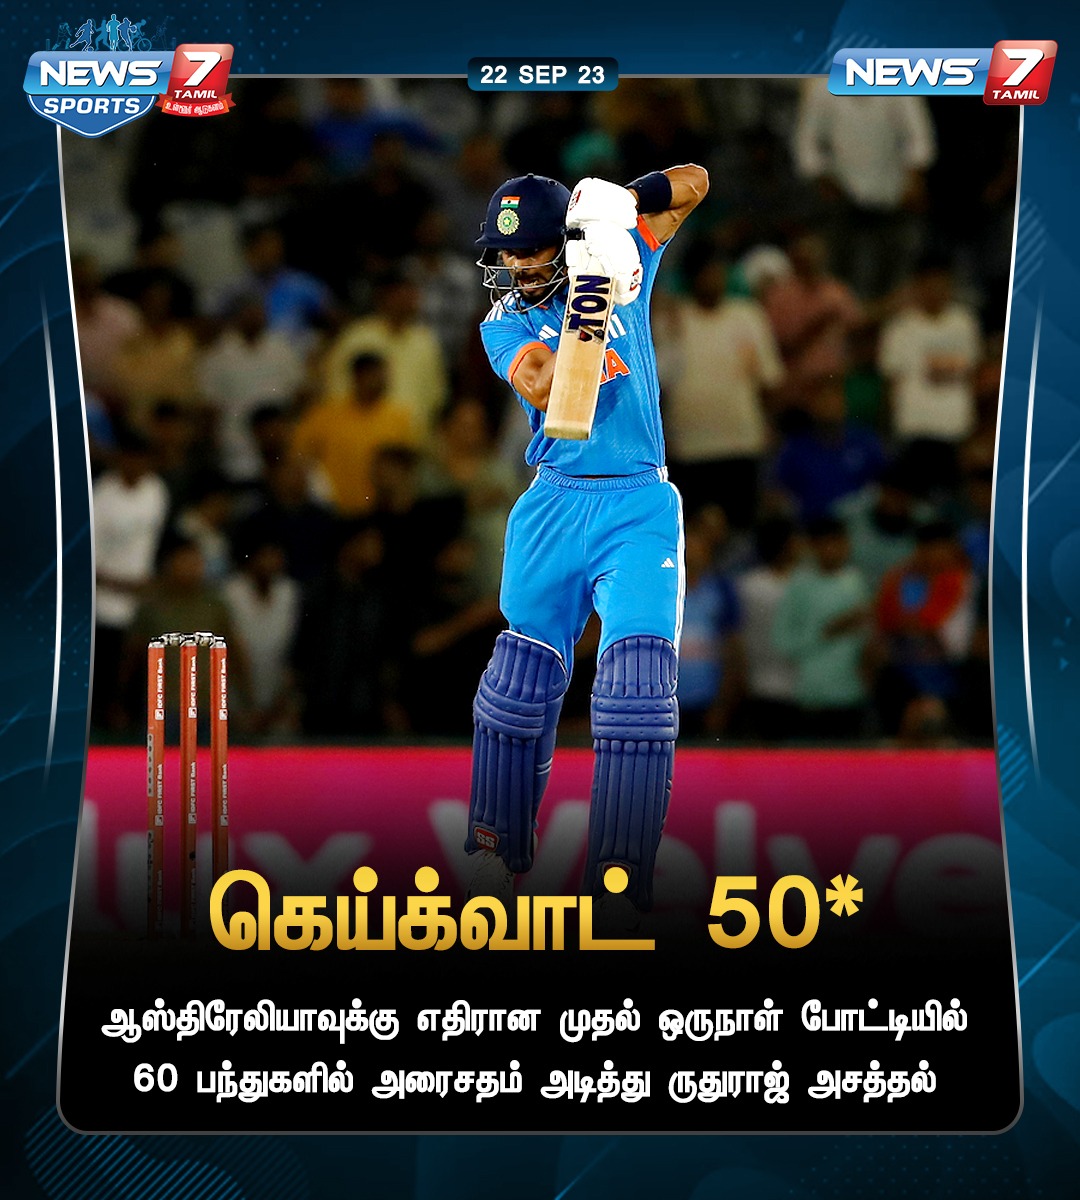 கெய்க்வாட் 50*

#INDvsAUS | #AUSvsIND | #1stODI | #India | #Australia | #Cricket | #ODI | #Ruturaj | #Gill | #Shami | #News7Tamil | #News7TamilUpdates